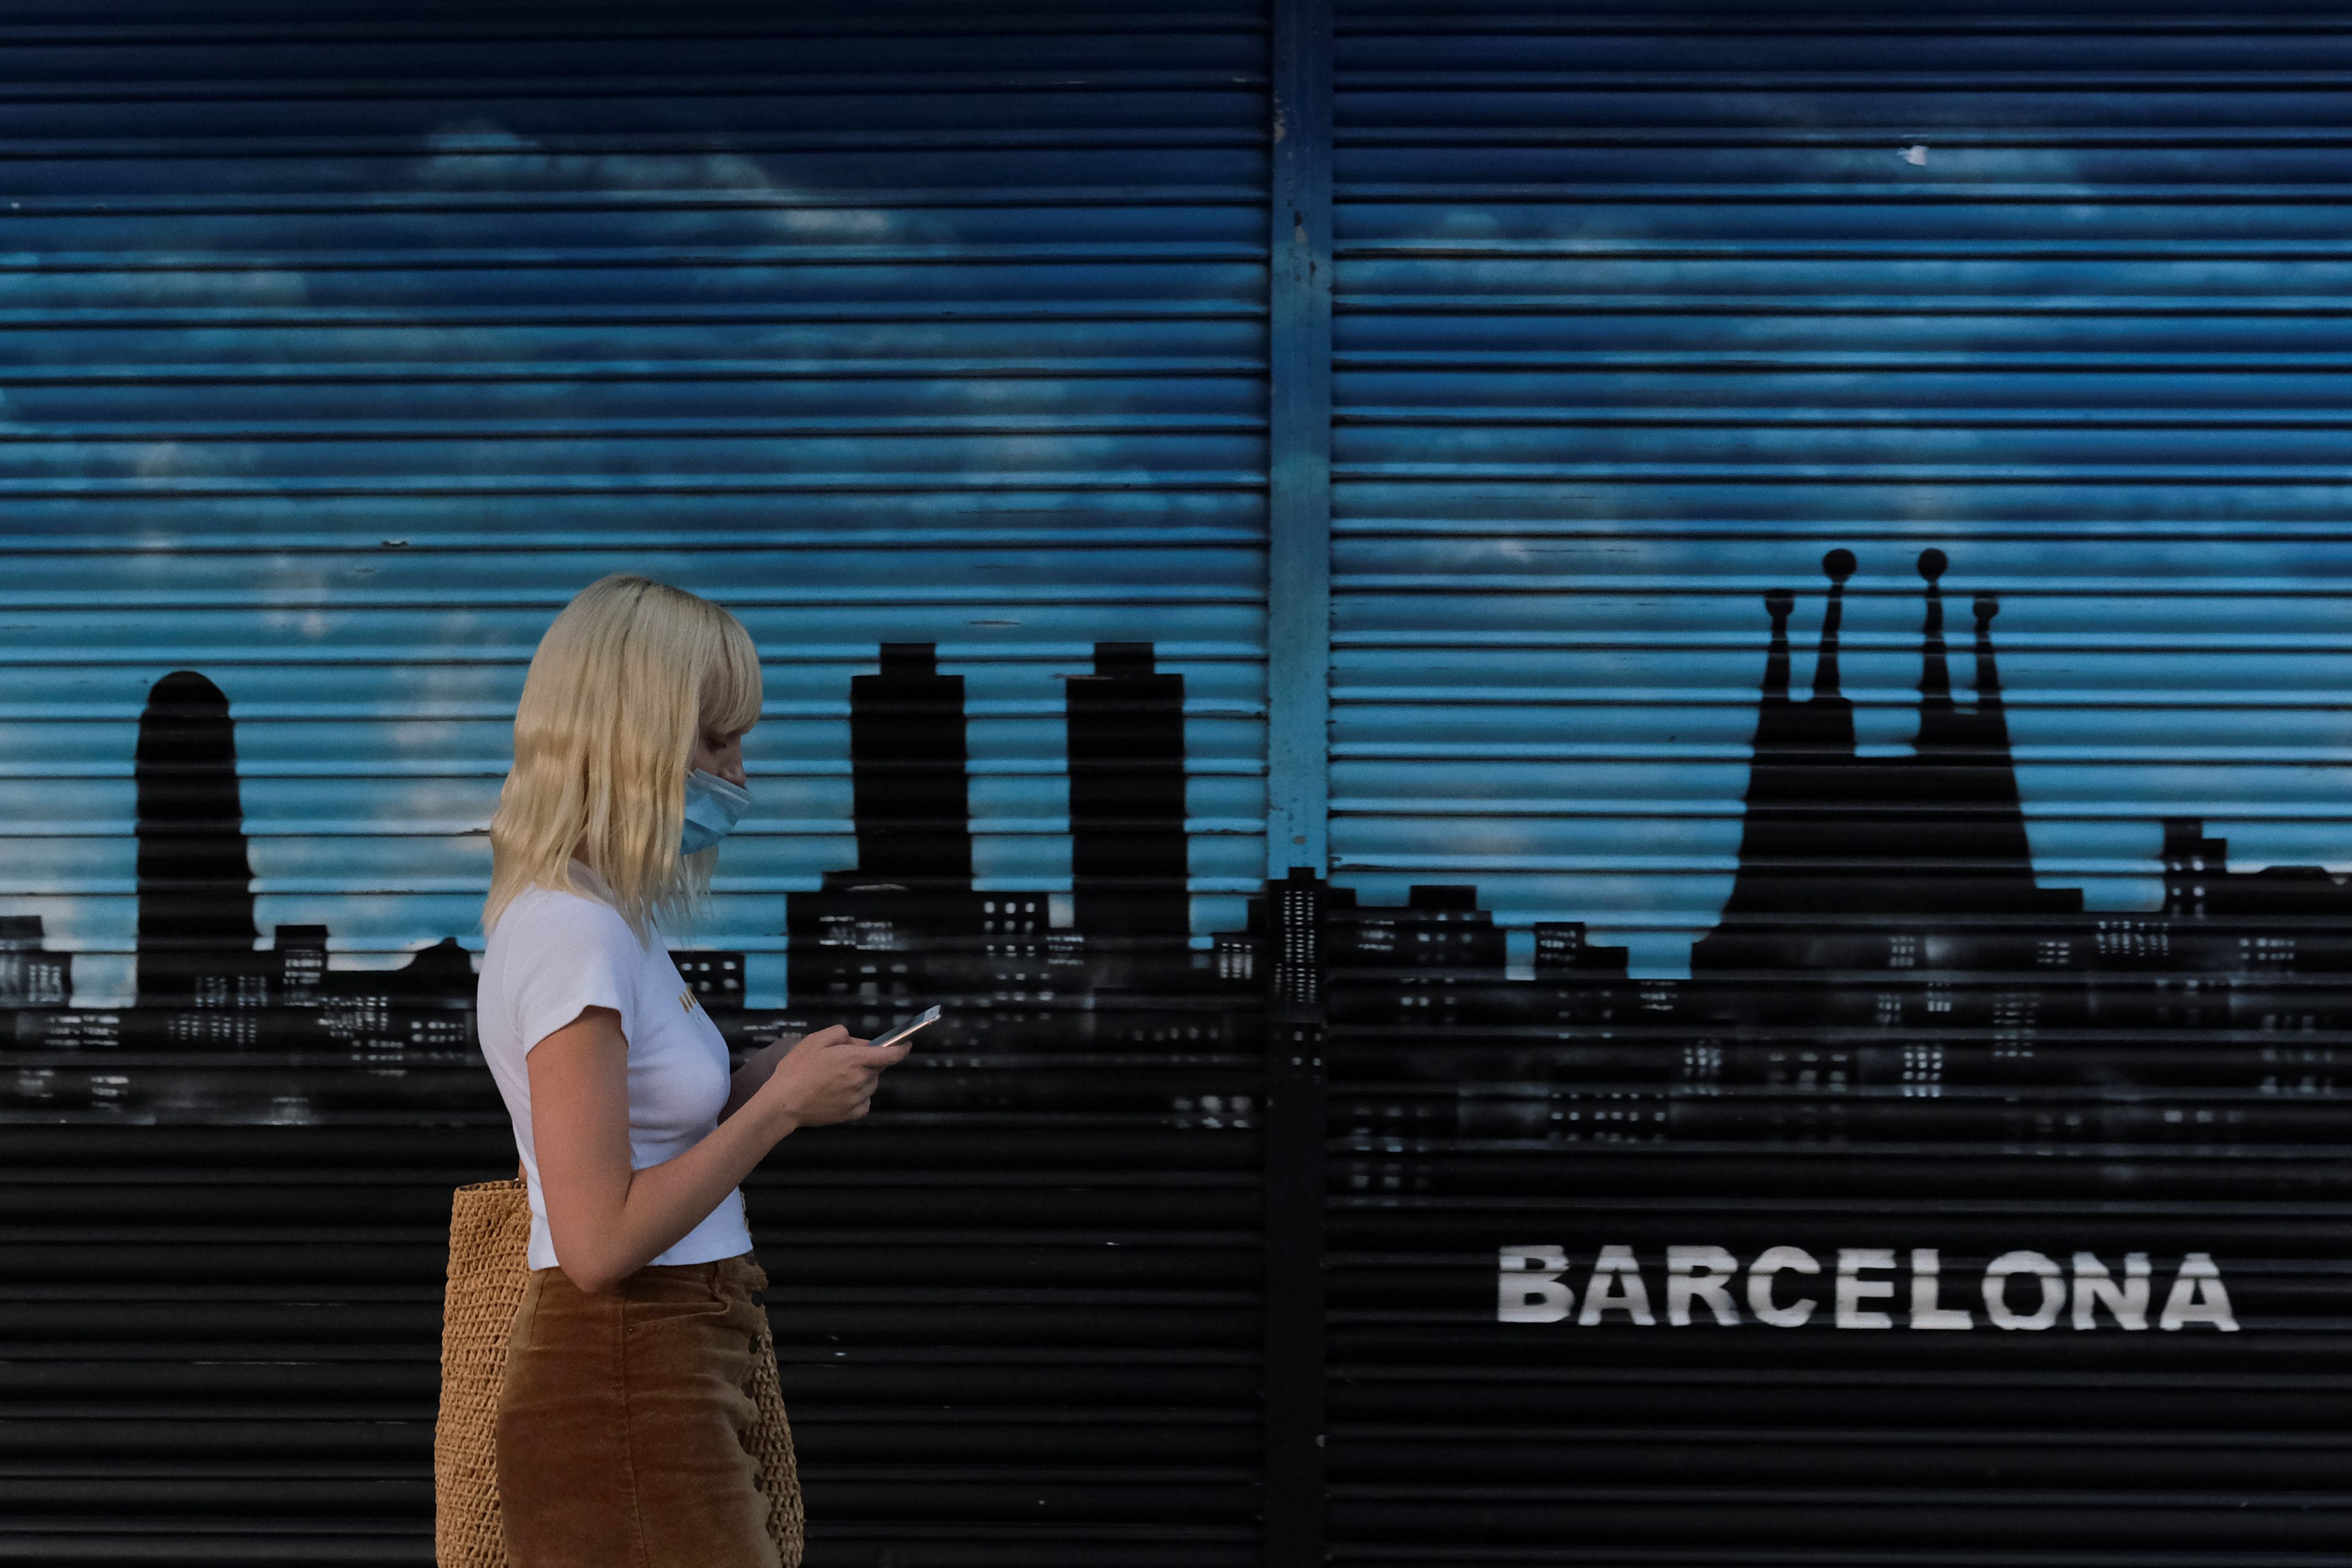 Una joven pasea con una mascarilla por delante de un mural pintado en Barcelona